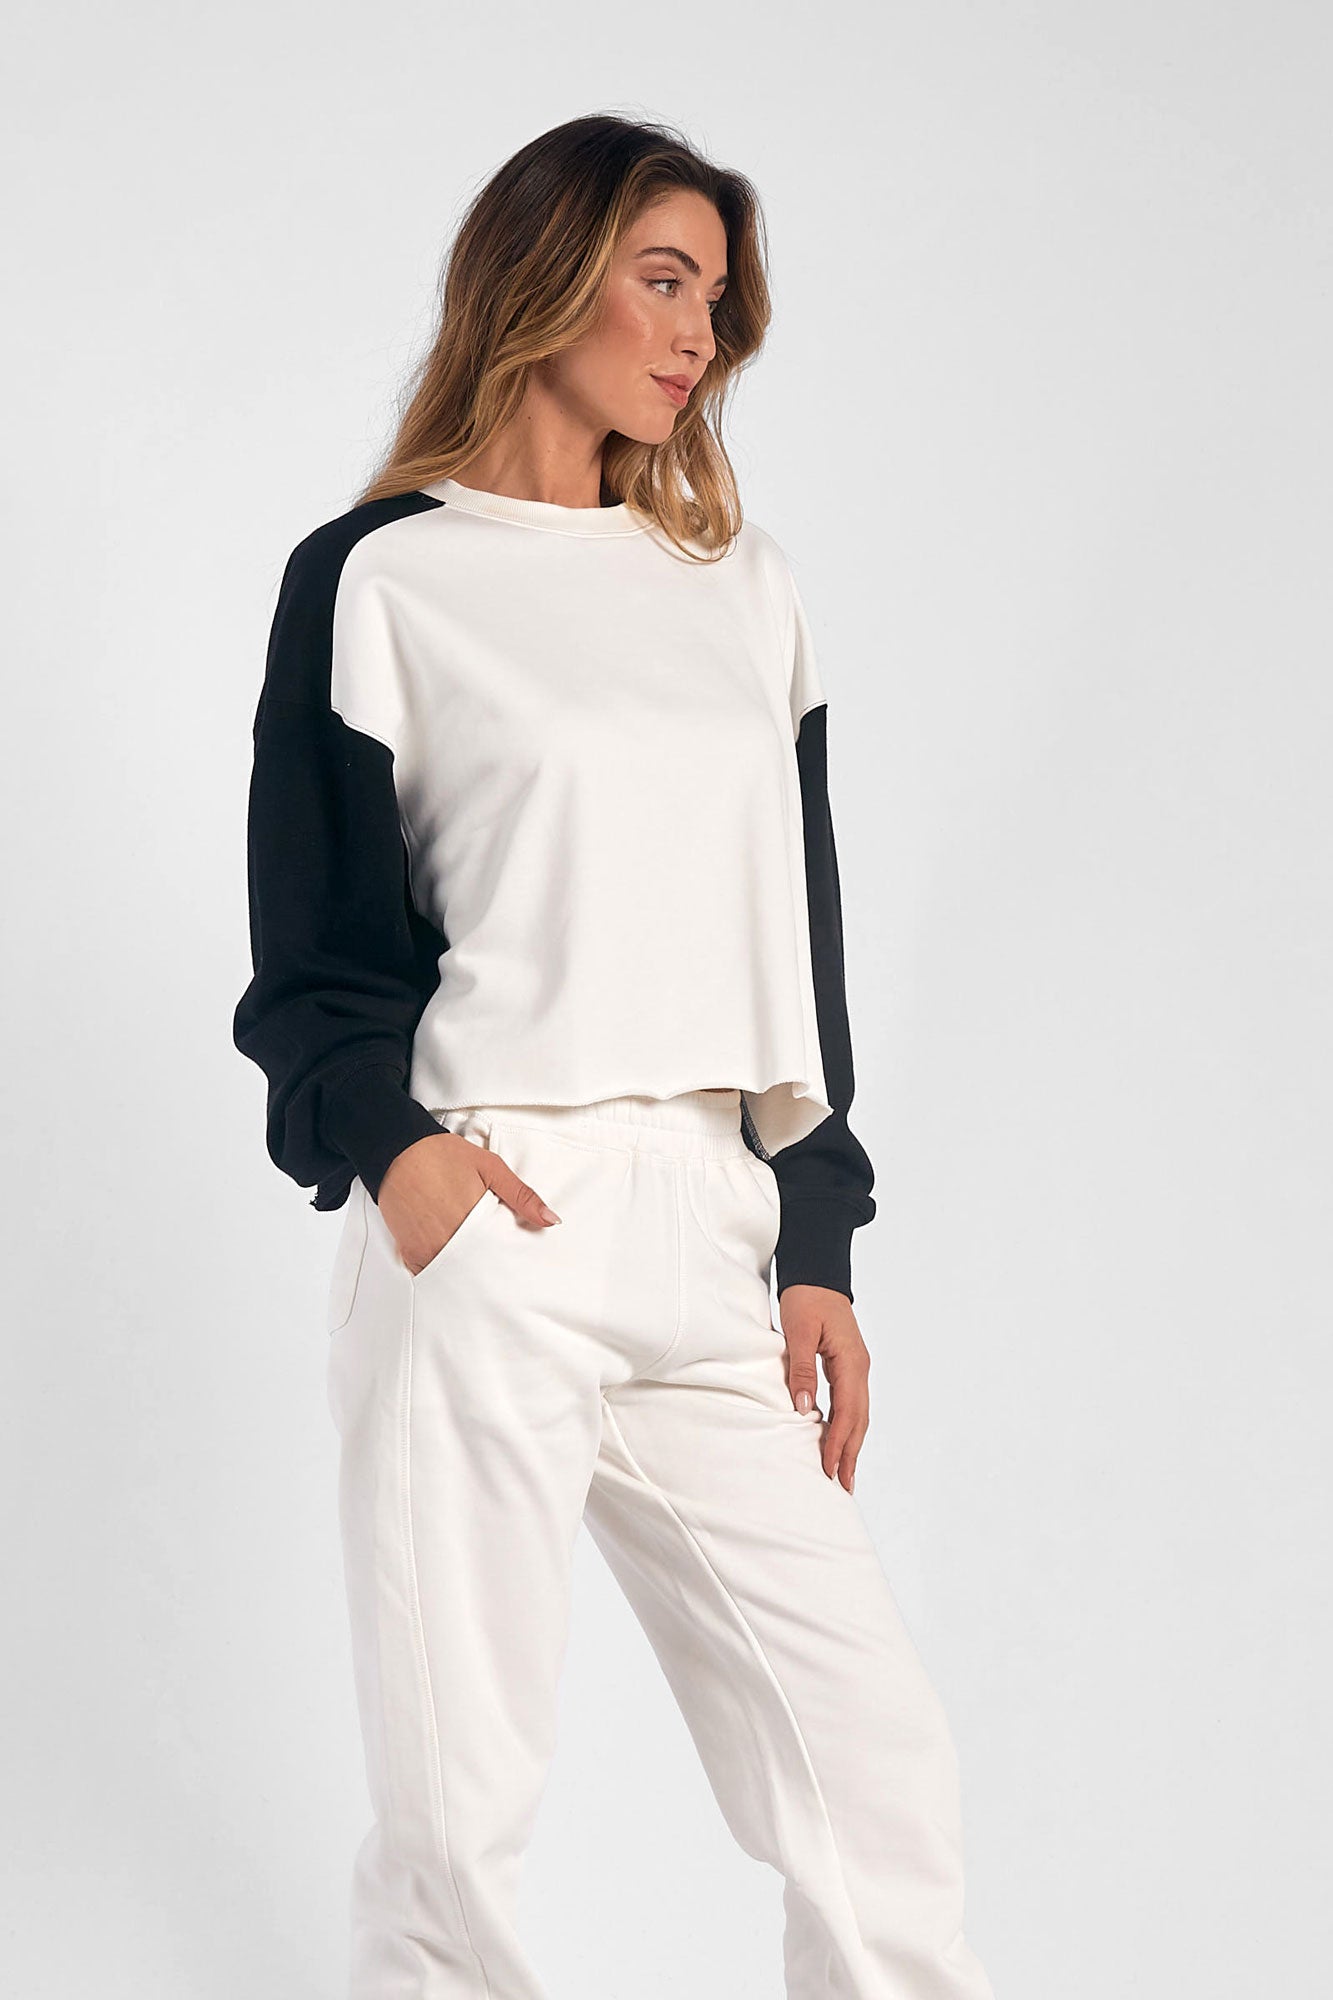 Elan Colorblock Sweatshirt-White/Black